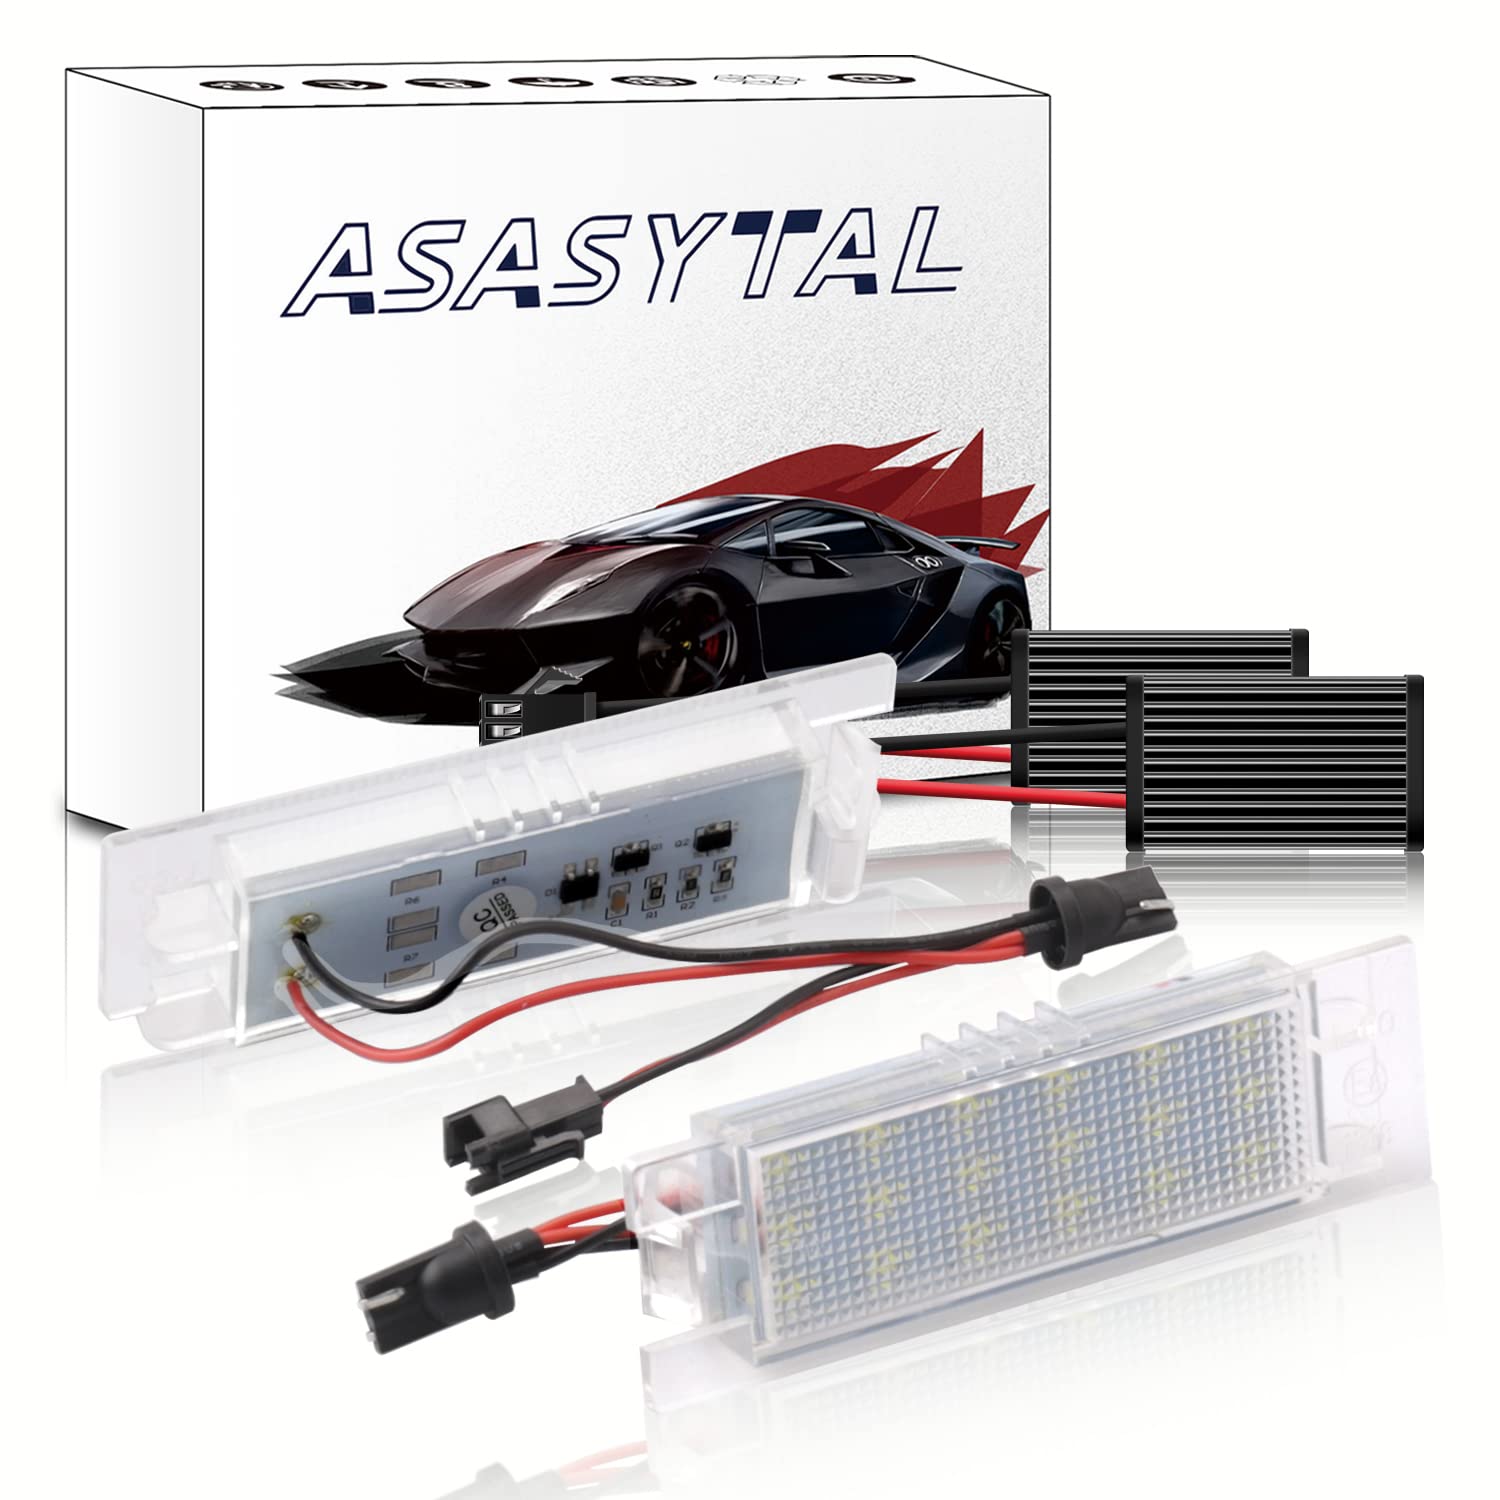 Asasytal LED Kennzeichenbeleuchtung, 18 SMD LED Rücklichter 6000K Xenon-Weiß Lizenzlampe Kompatibel mit Fiat Grande Pun-to 188 Van 199/188AX Sei-cento 187 Mul-tipla 186 Marea 185, 2 Stücke von Asasytal